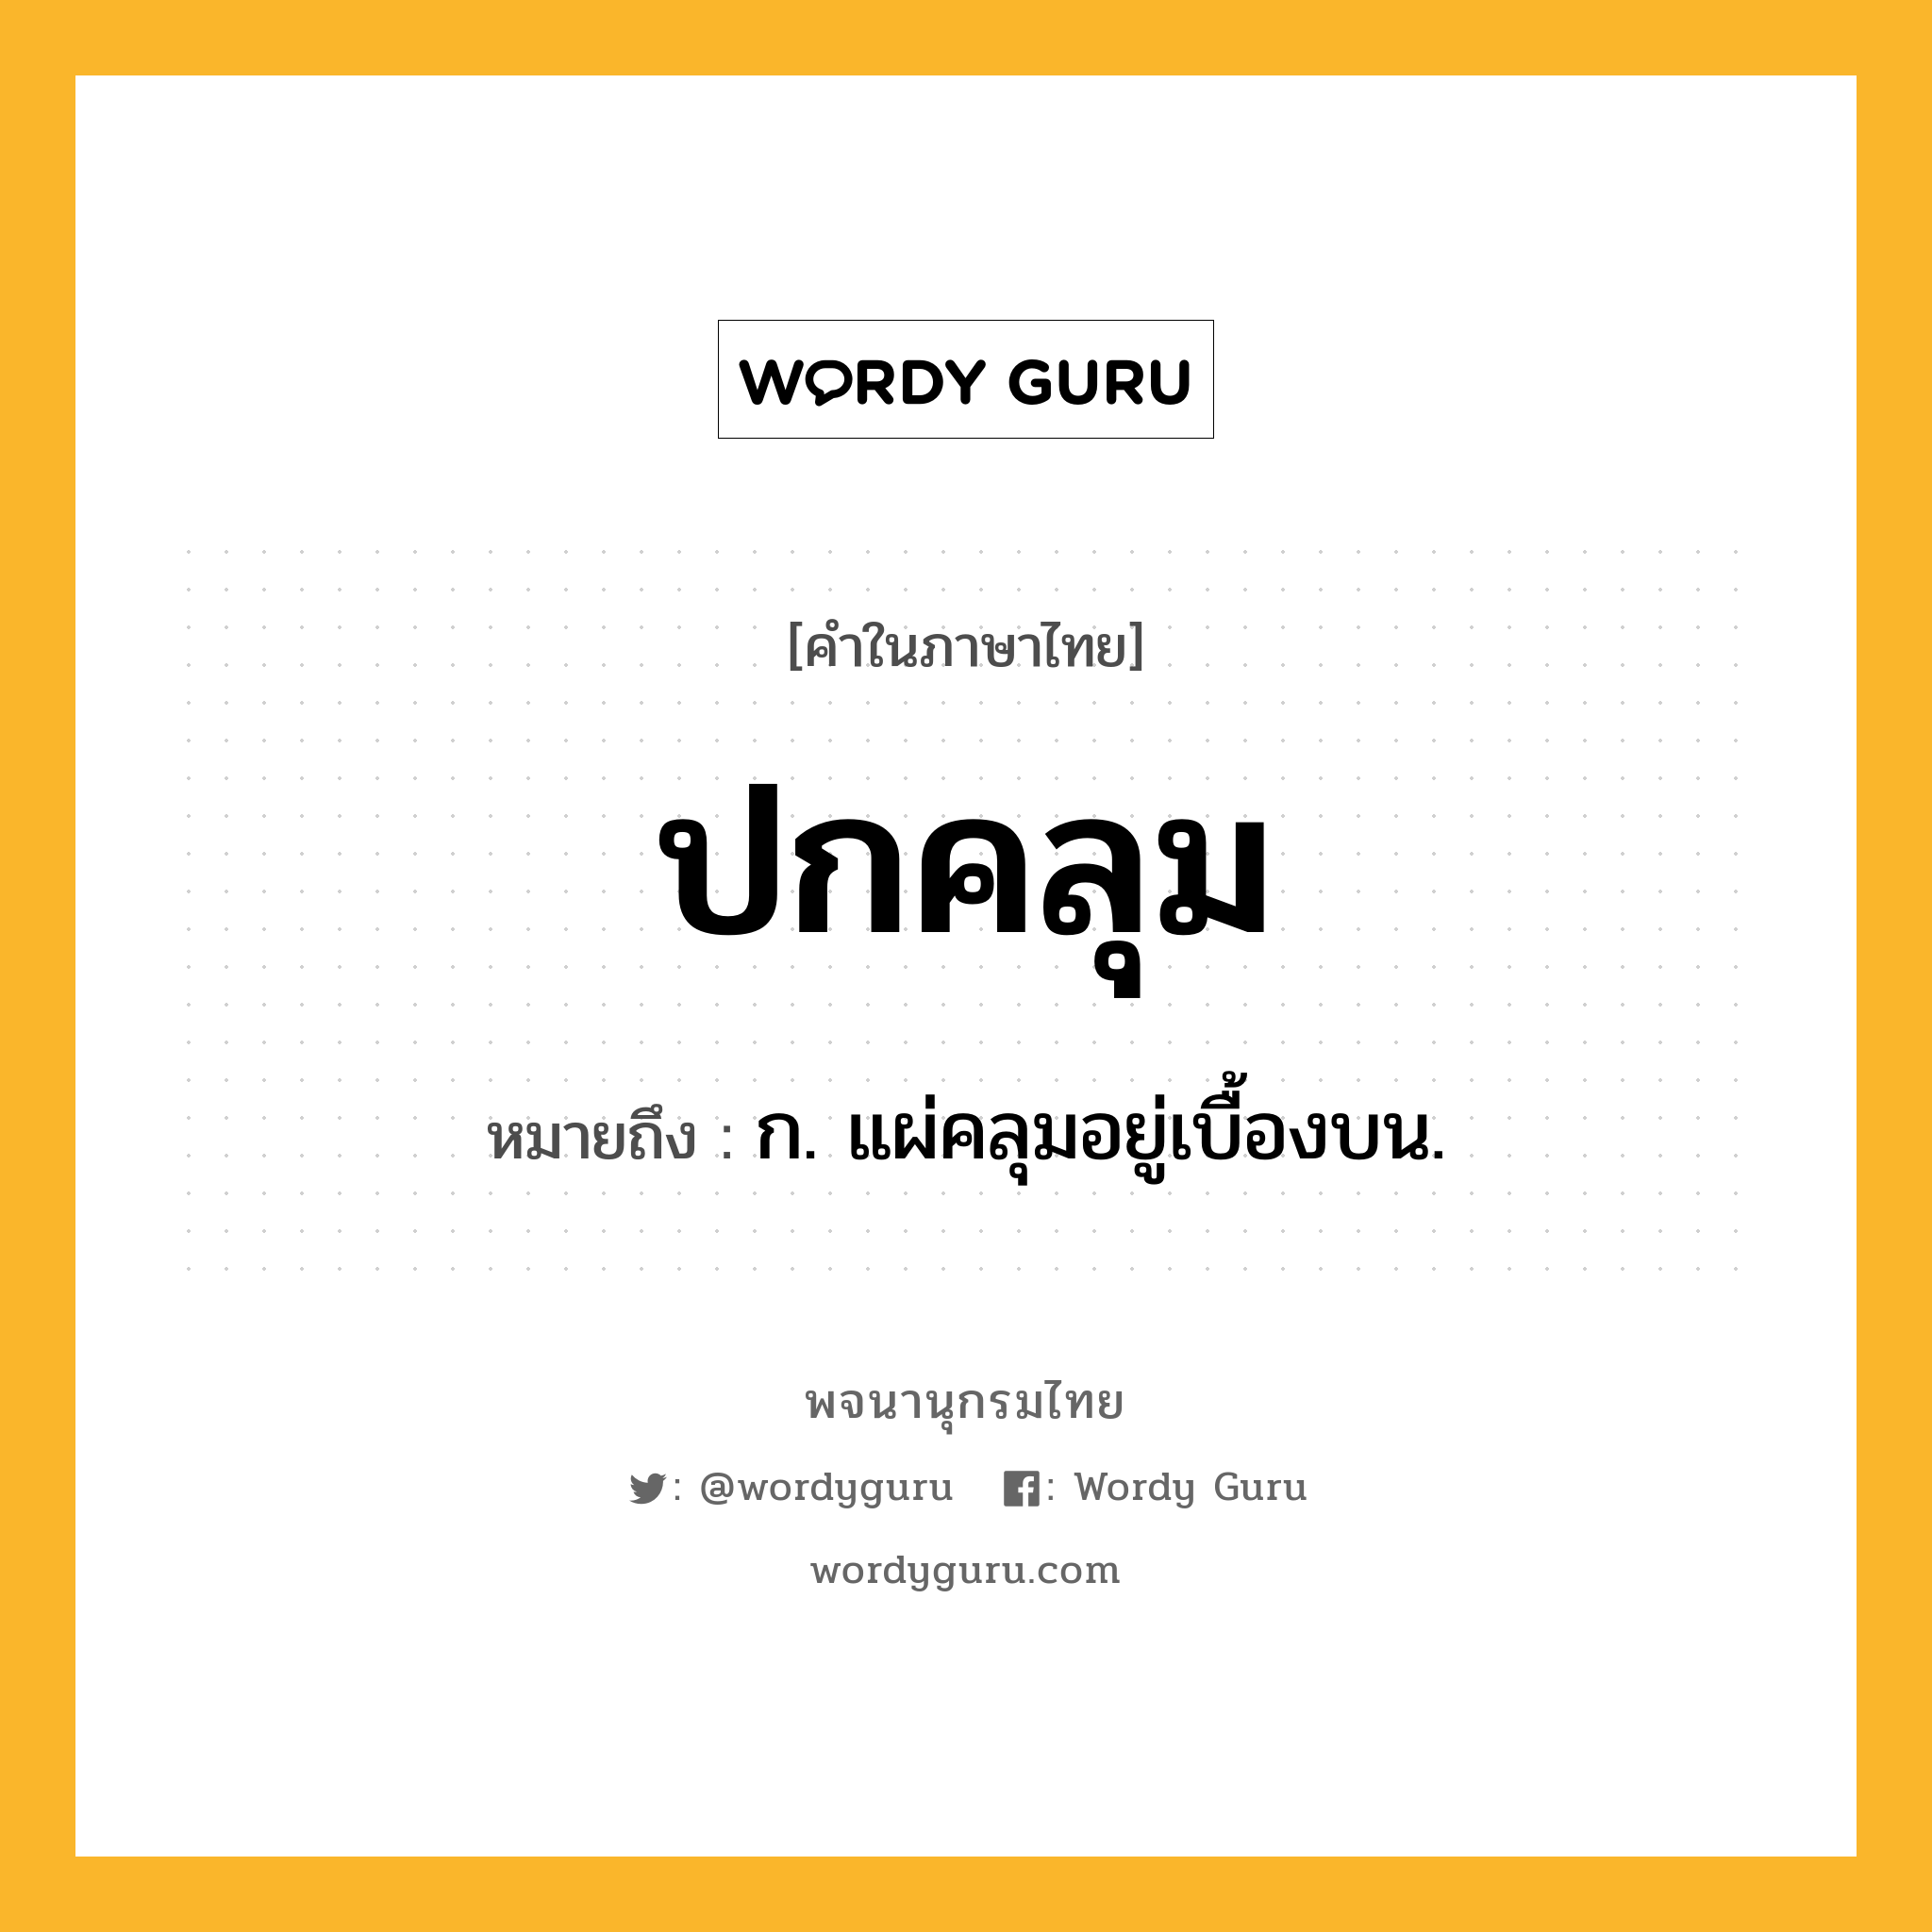 ปกคลุม หมายถึงอะไร?, คำในภาษาไทย ปกคลุม หมายถึง ก. แผ่คลุมอยู่เบื้องบน.